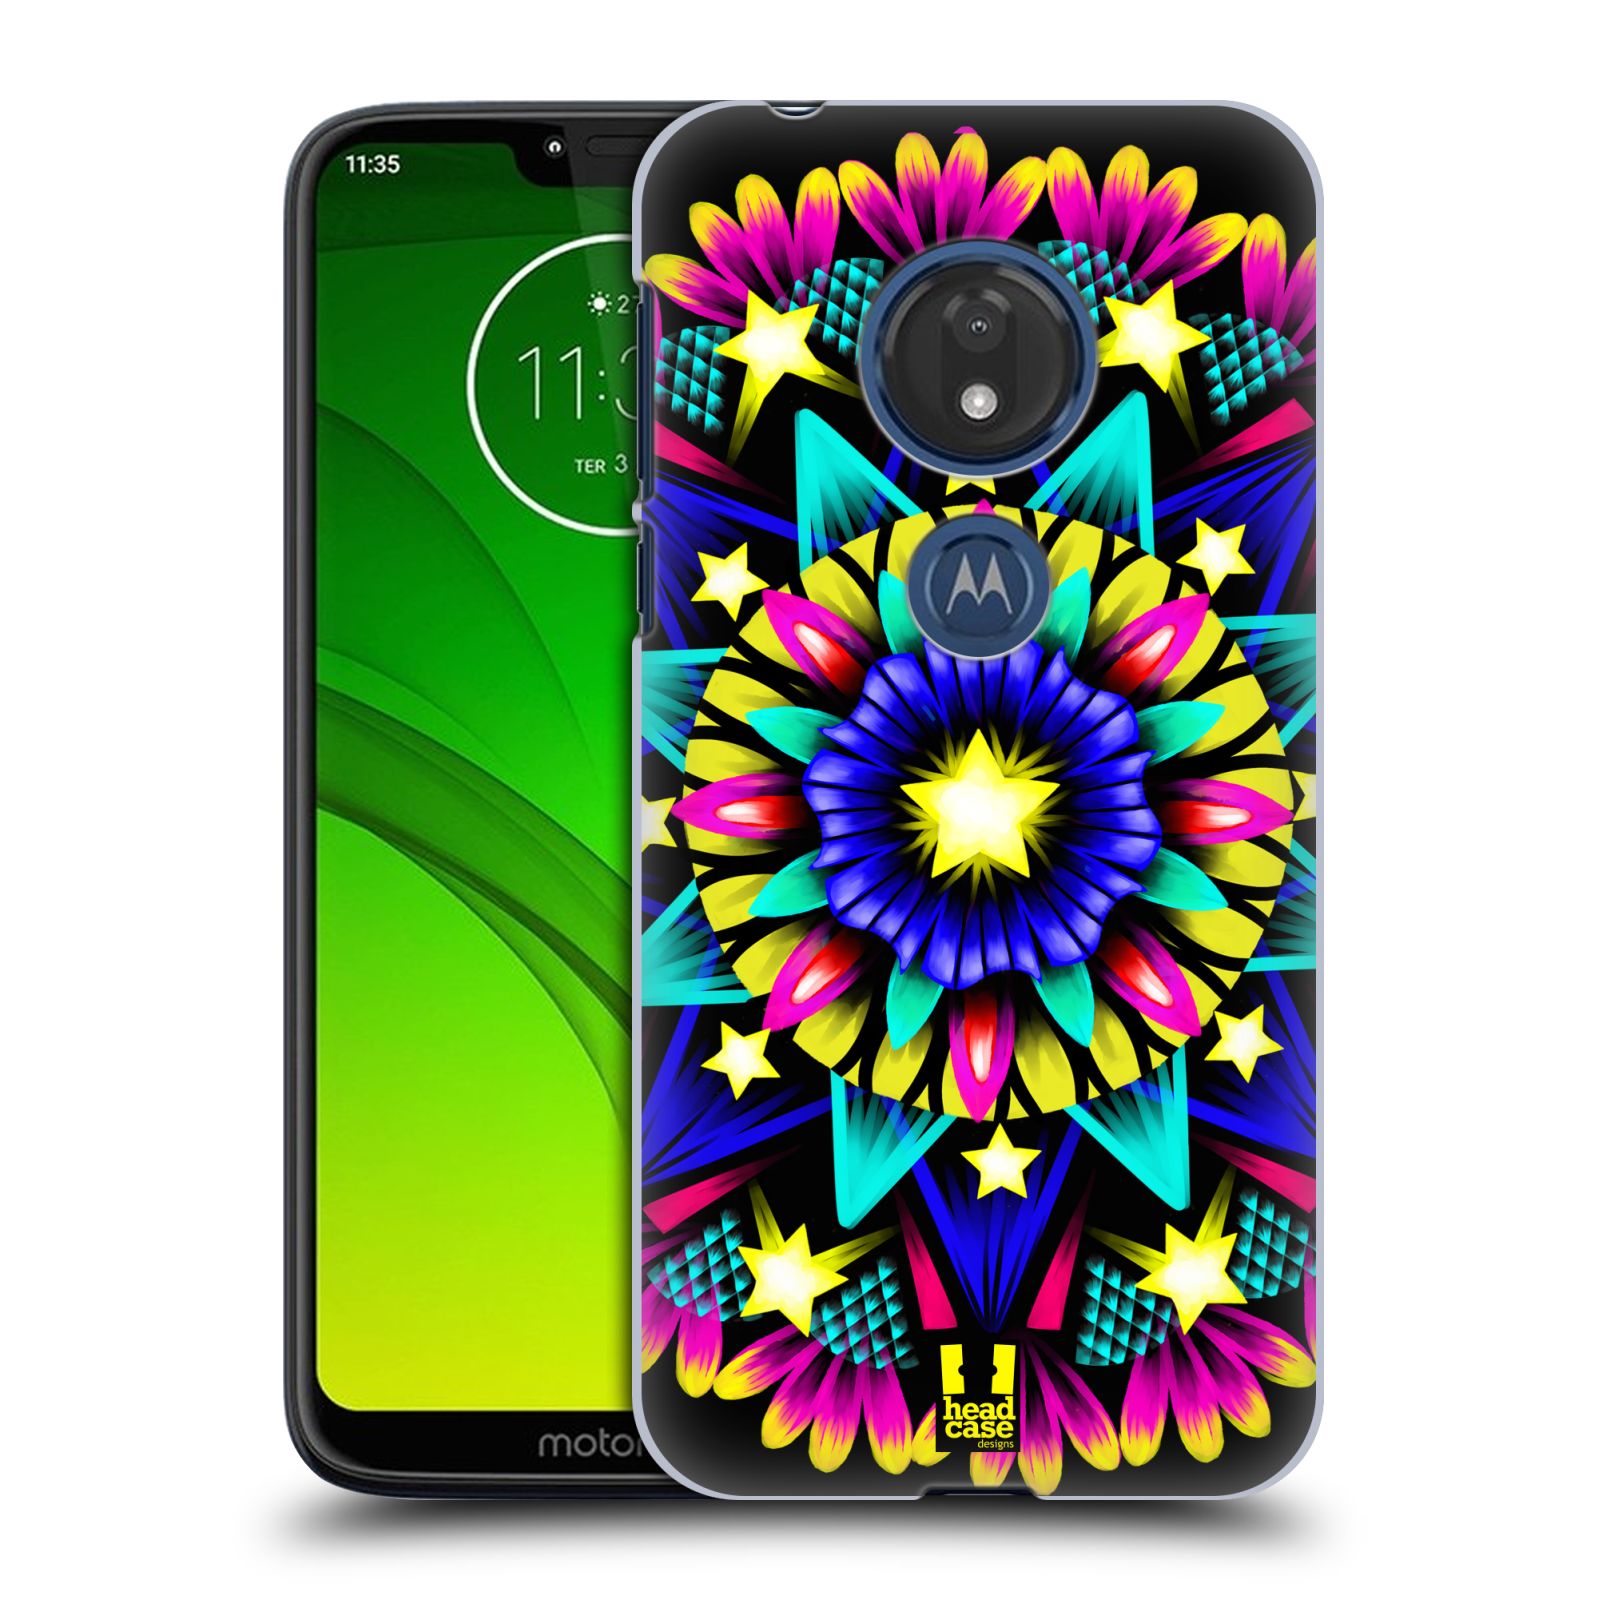 Pouzdro na mobil Motorola Moto G7 Play vzor Indie Mandala kaleidoskop barevný vzor HVĚZDA